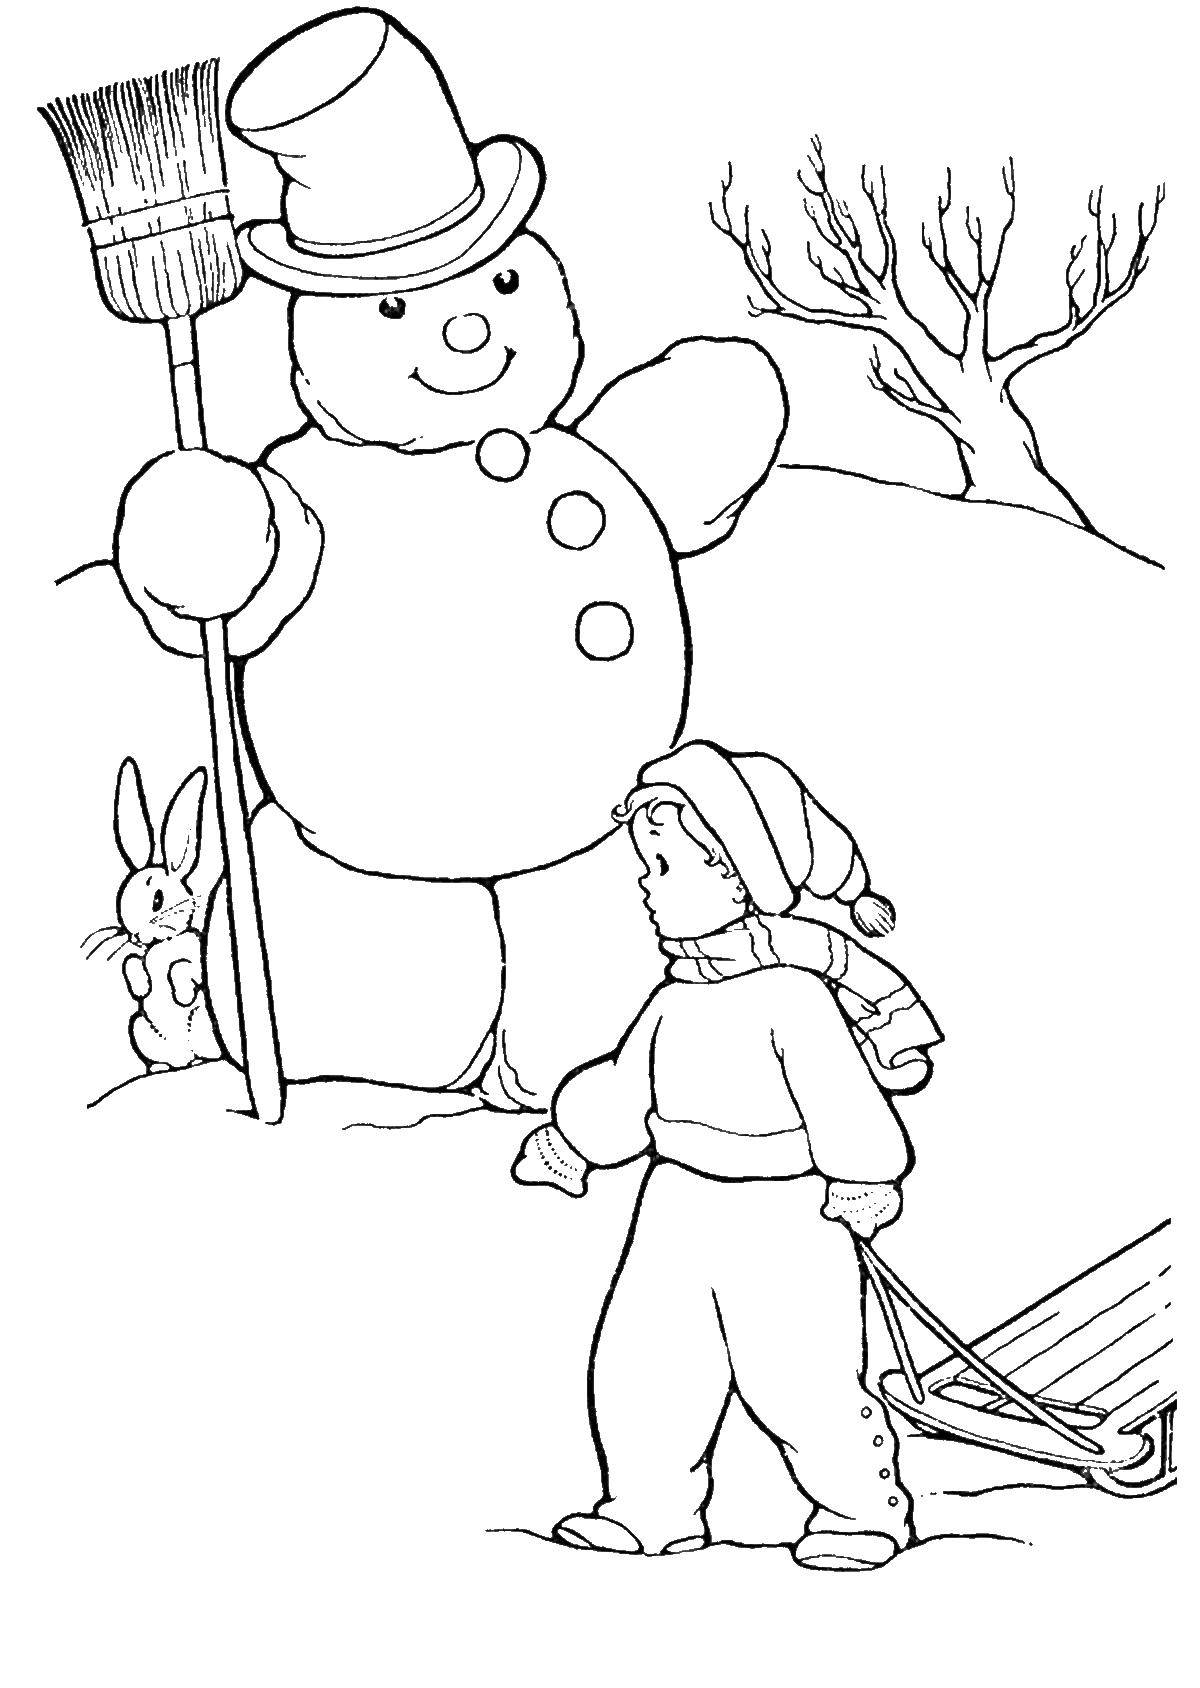 Раскрашенный снеговик для детей (снеговик, дети)